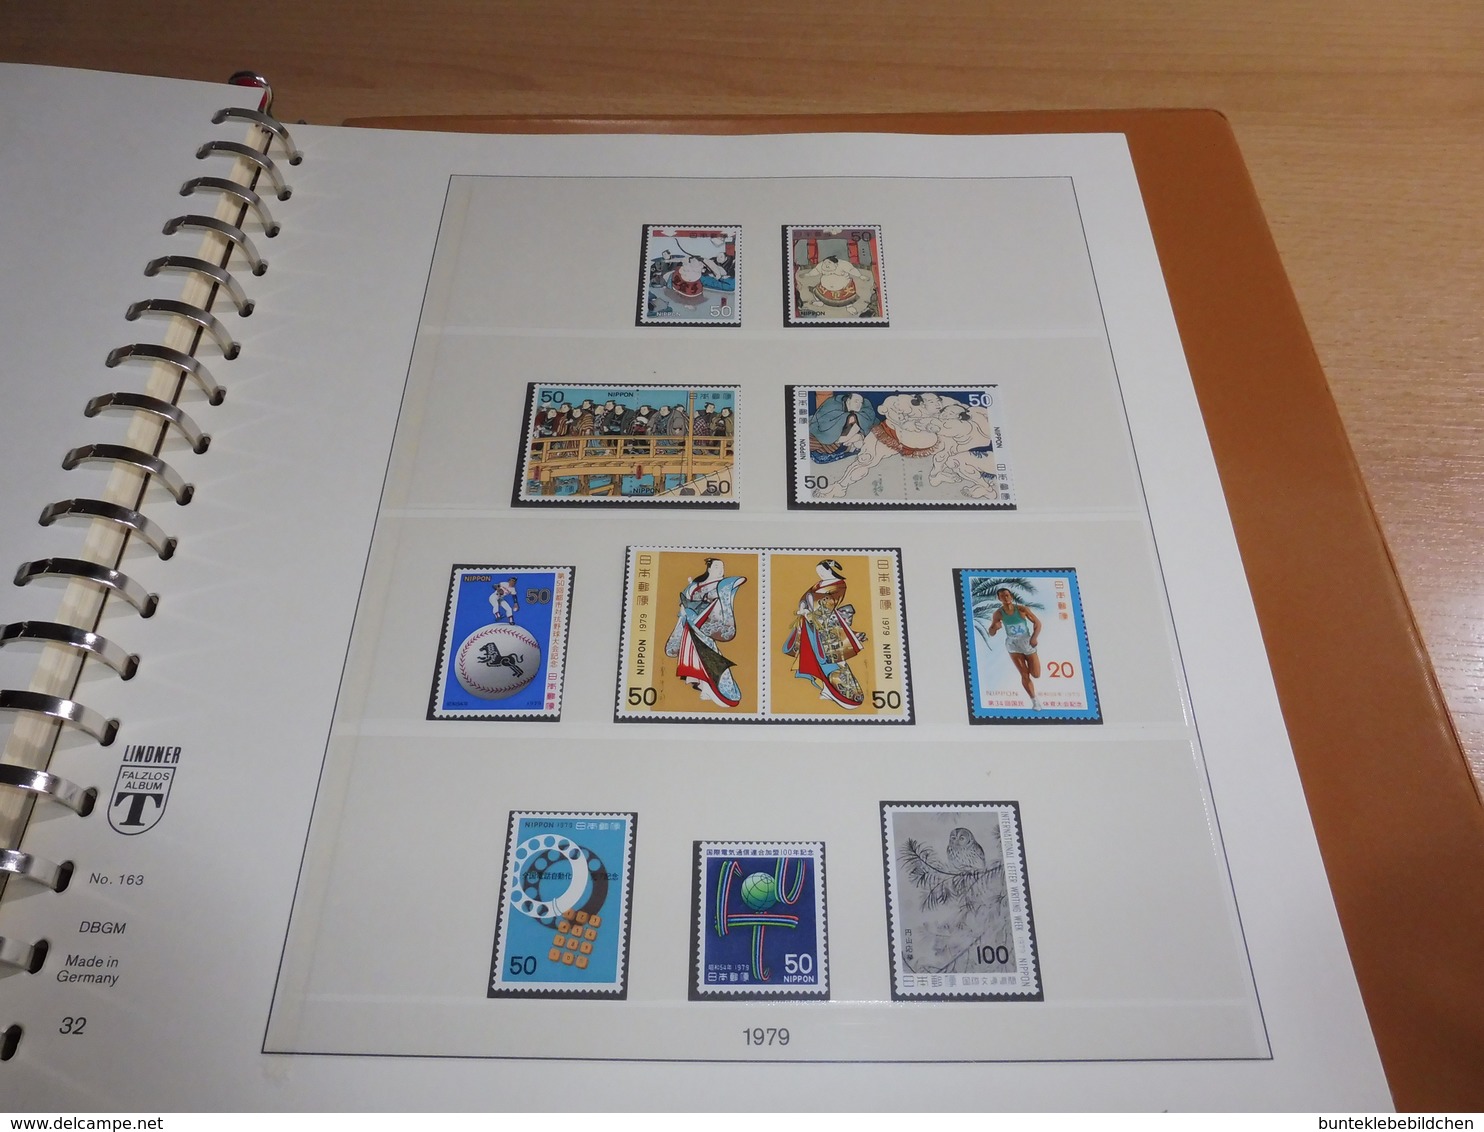 Sammlung Japan 1965 bis 1979 im Lindner- Album **, mit 65 Bildern alles Bebildert.